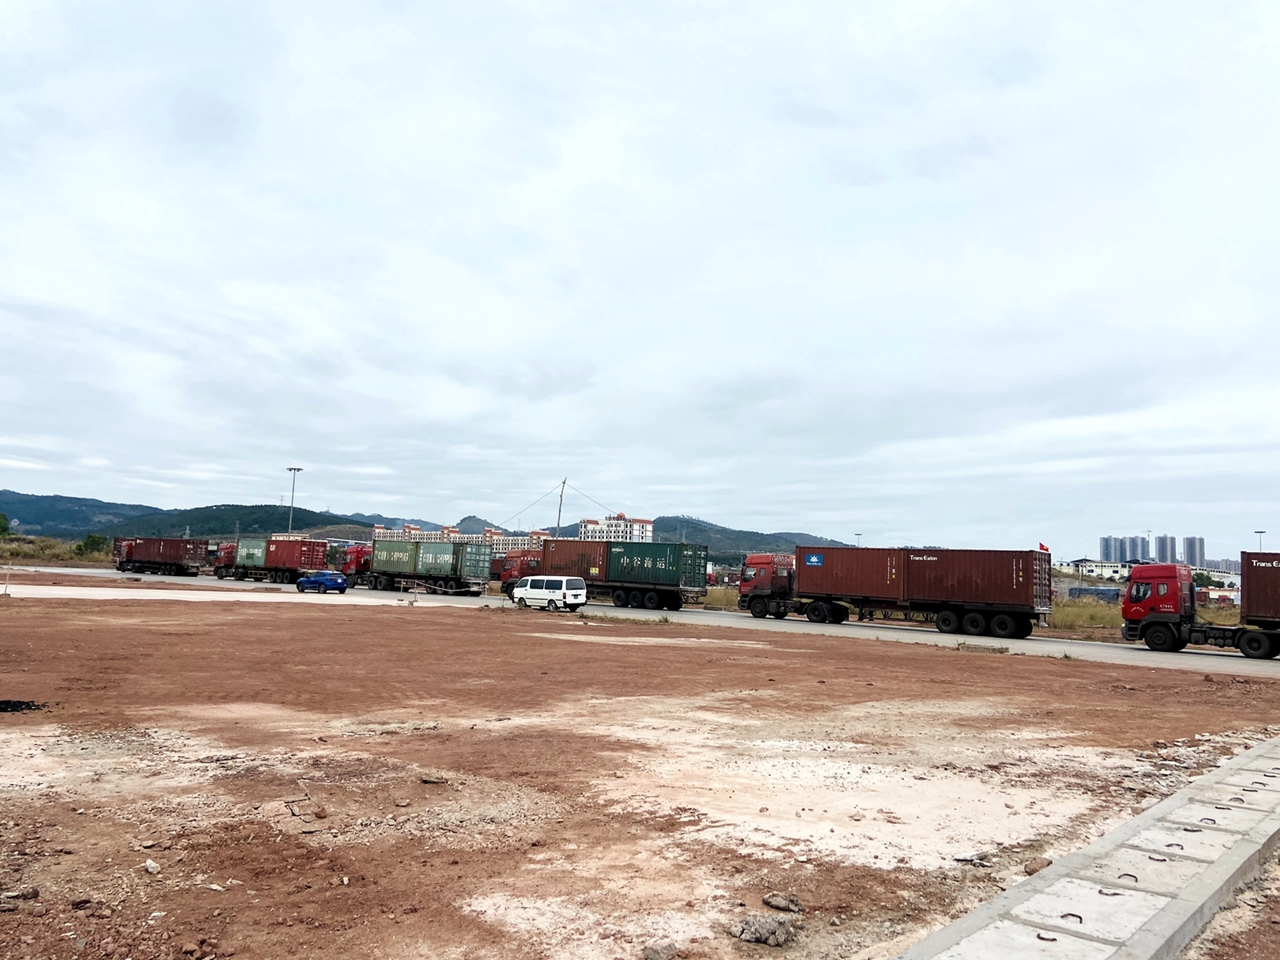 Doanh nghiệp đã chuẩn bị mặt bằng sạch tại khu vực Km3+4 (sông Ka Long, TP Móng Cái), sẵn sàng triển khai dự án Trung tâm giao dịch nông, lâm, thủy sản Châu Á Thái Bình Dương khi được Chính phủ phê duyệt.